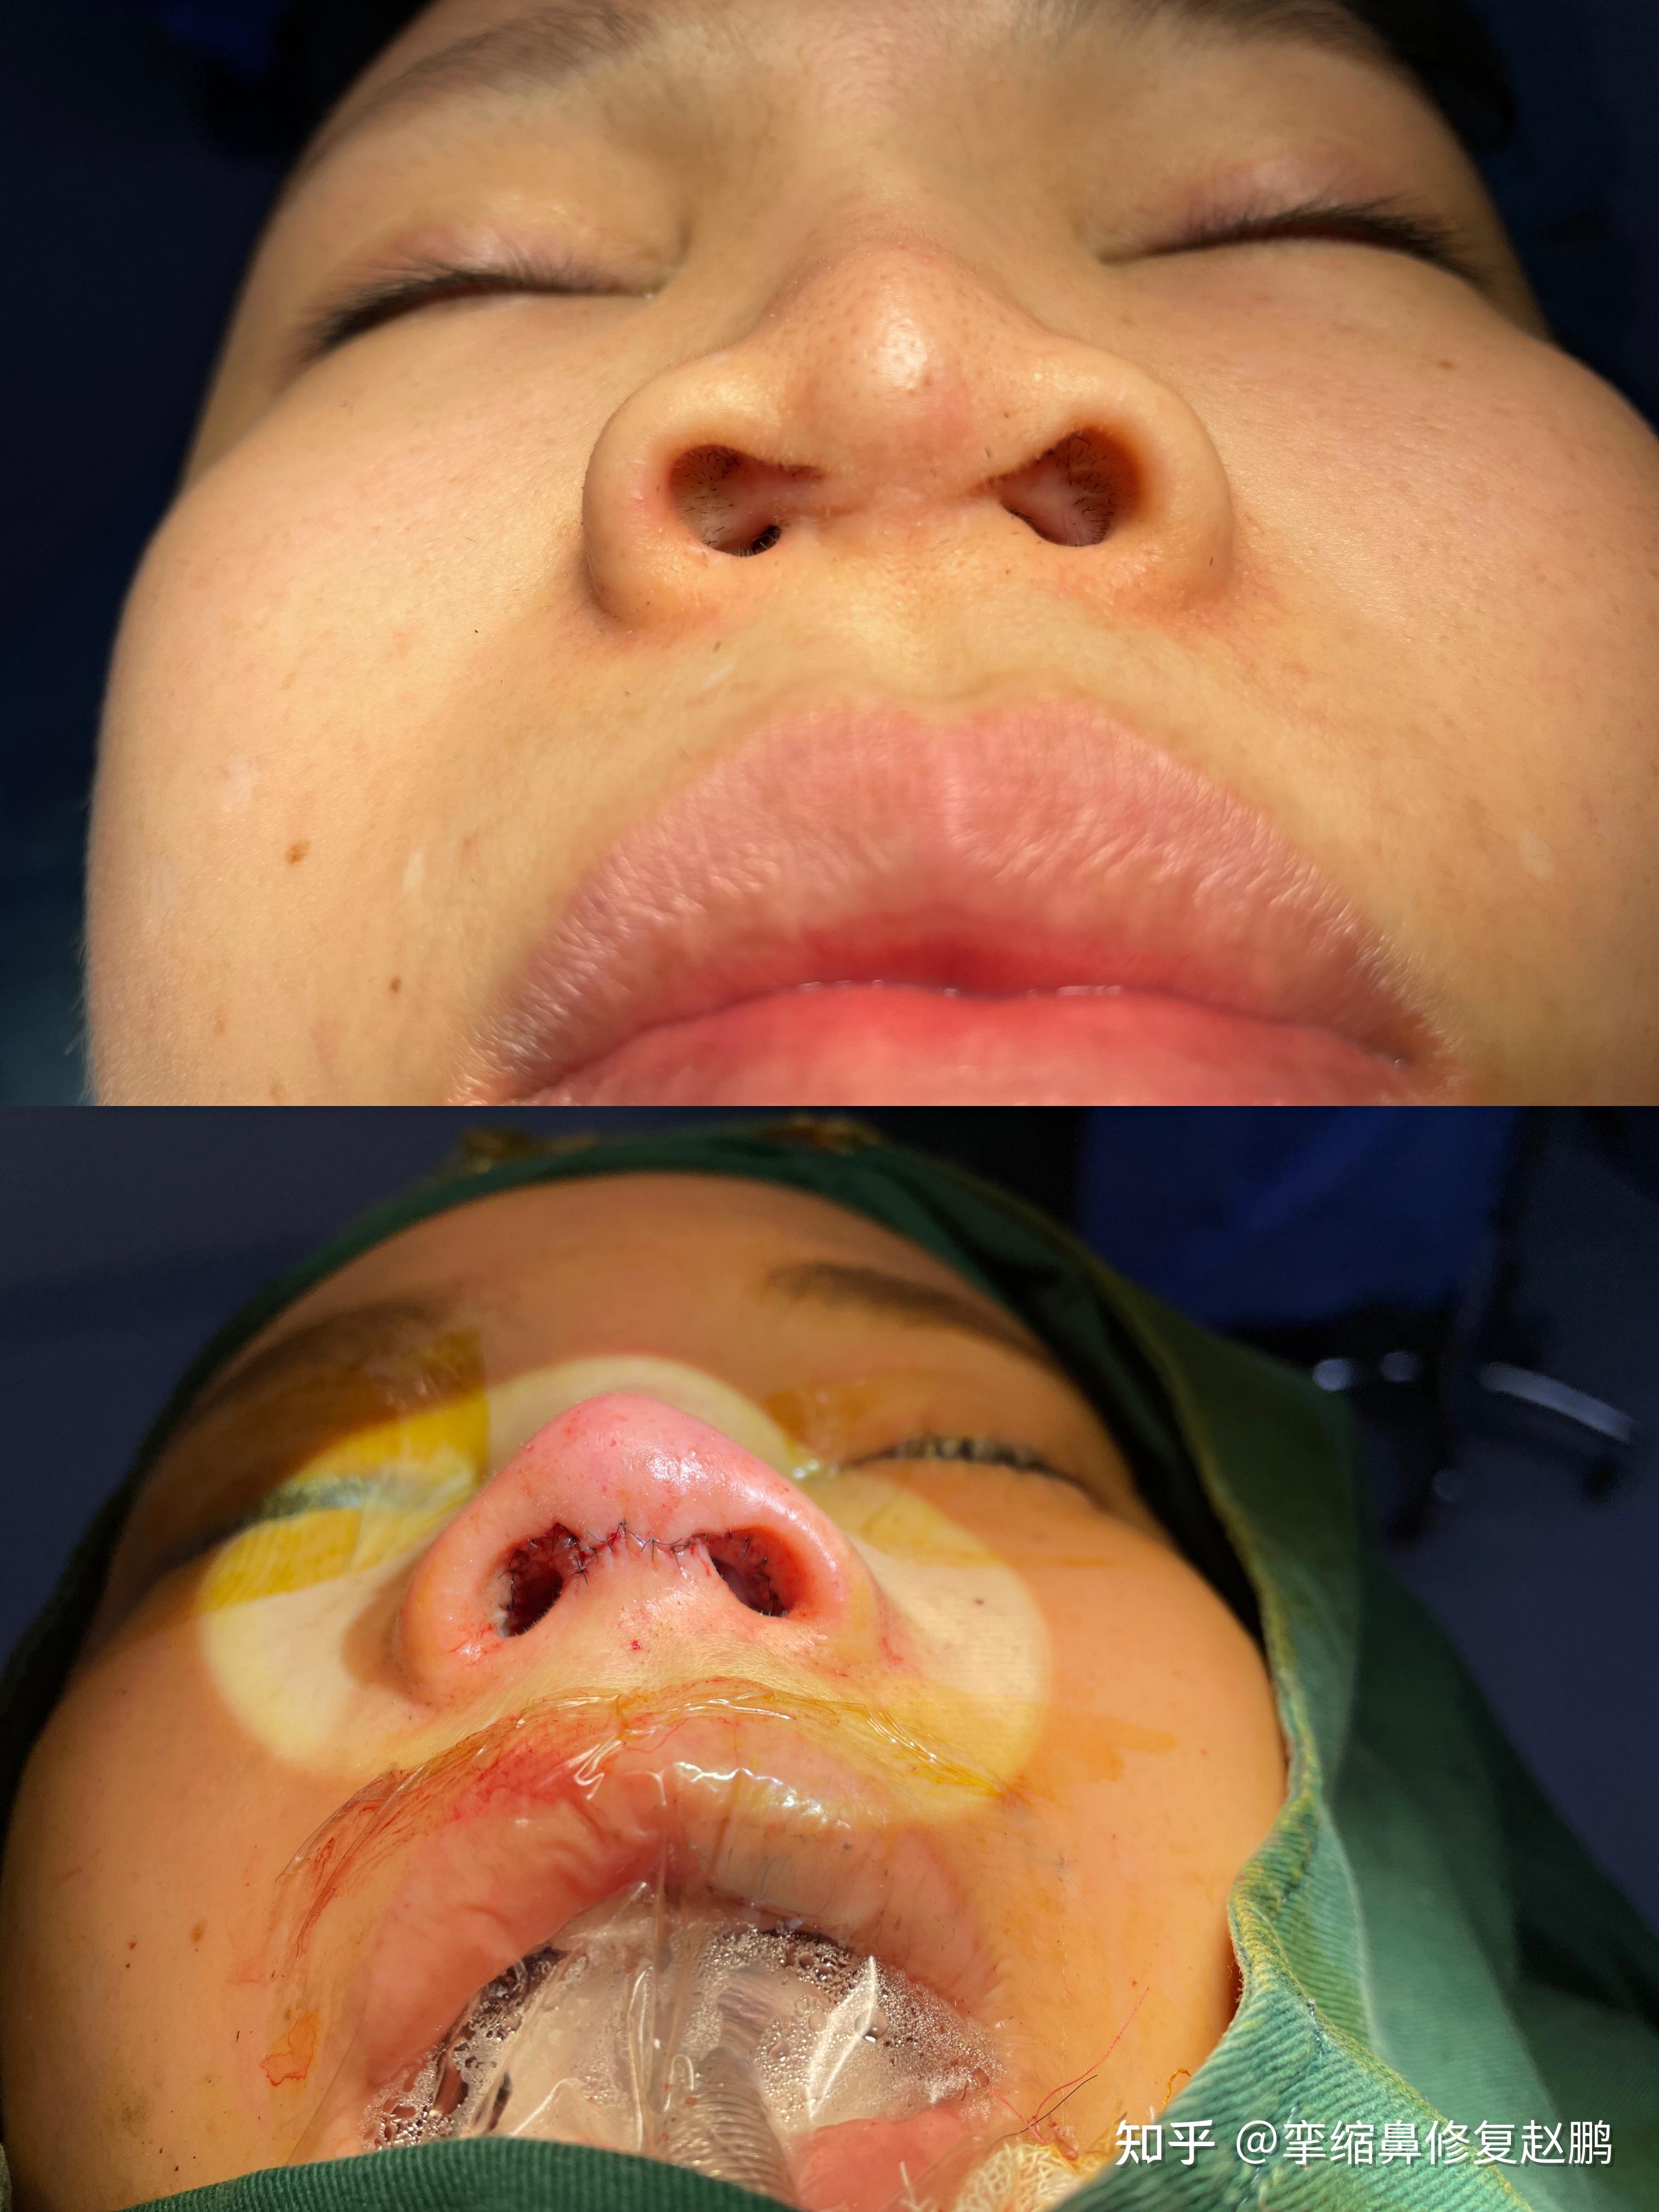 鼻小柱挛缩鼻孔内疤痕增生是什么原因造成的 